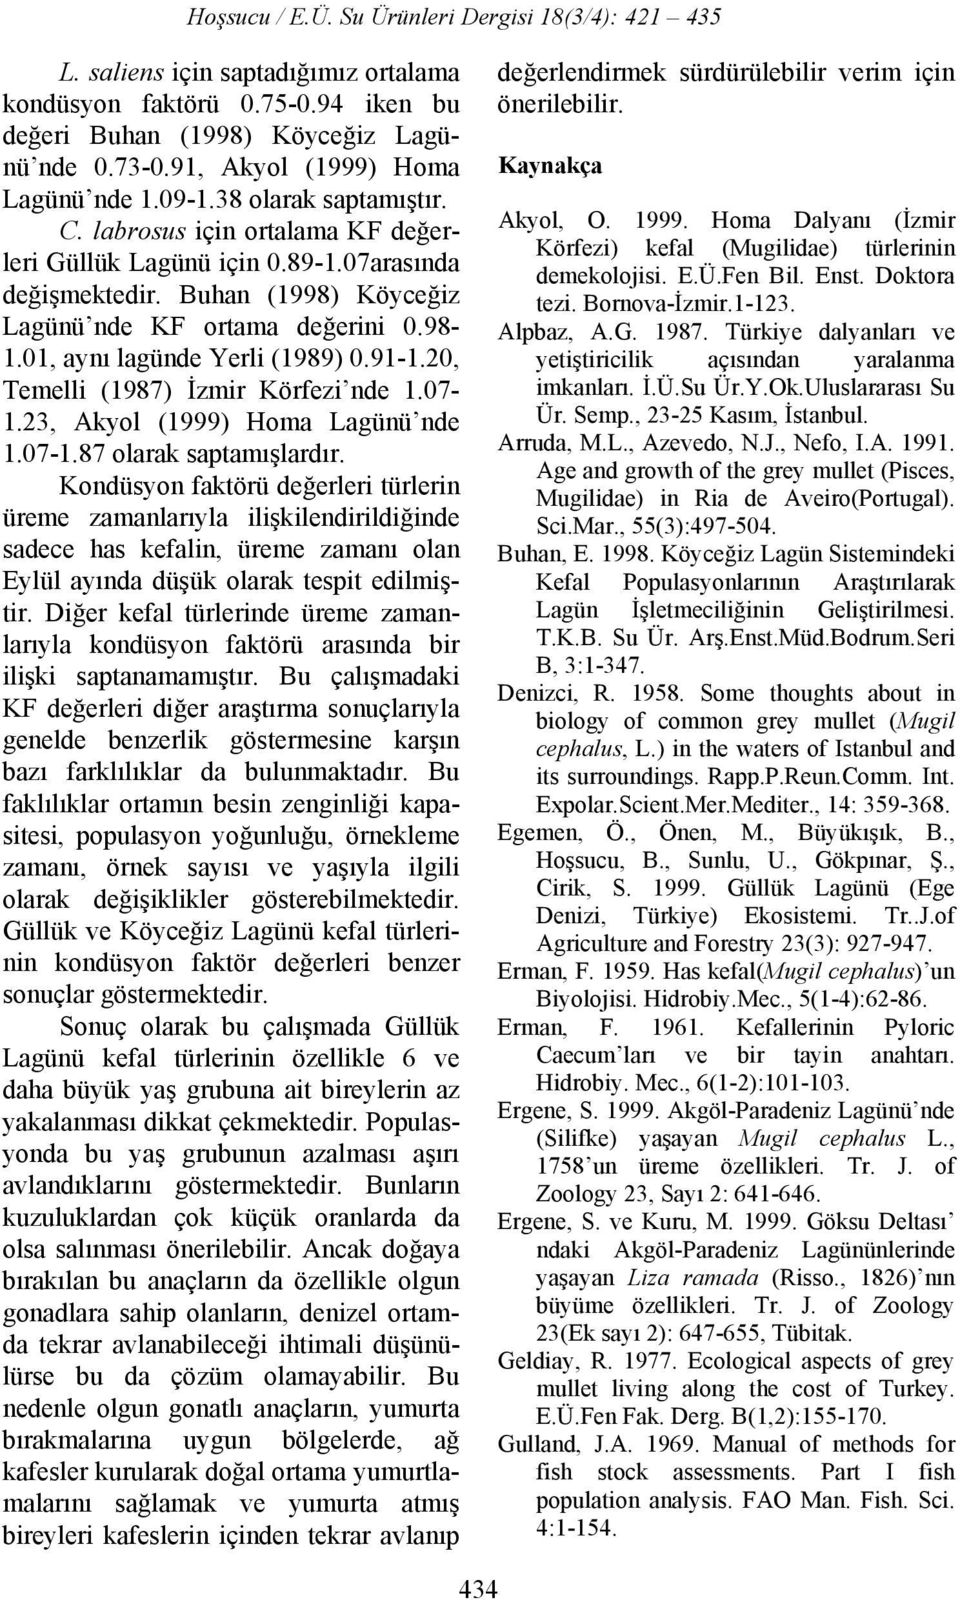 20, Temelli (1987) İzmir Körfezi nde 1.07-1.23, Akyol (1999) Homa Lagünü nde 1.07-1.87 olarak saptamışlardır.